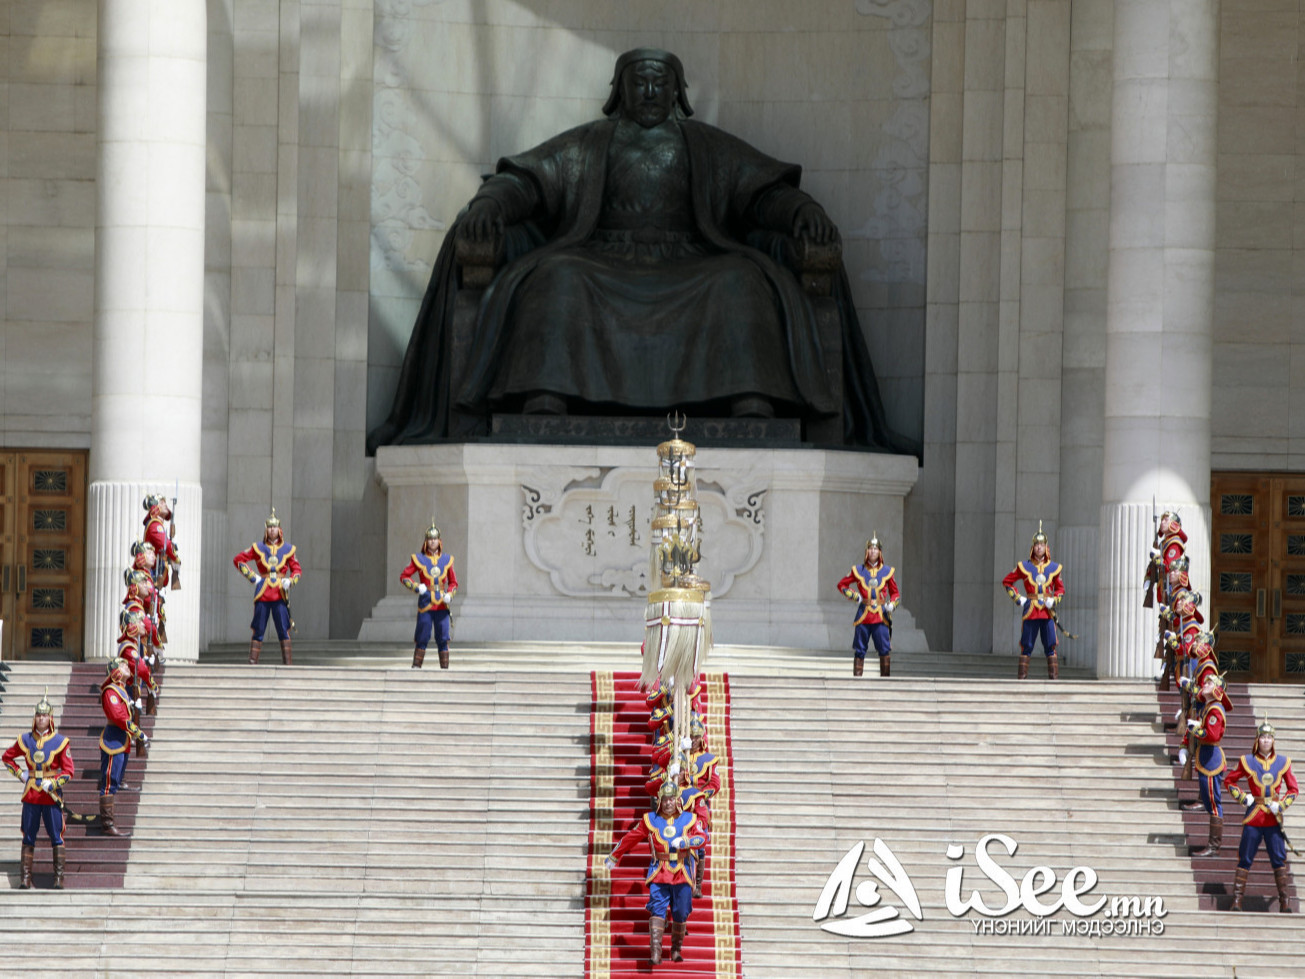 Өнөөдөр төрийн өндөрлөгүүд Их эзэн Чингис хаан, Жанжин Д.Сүхбаатарын хөшөөнд хүндэтгэл үзүүлнэ